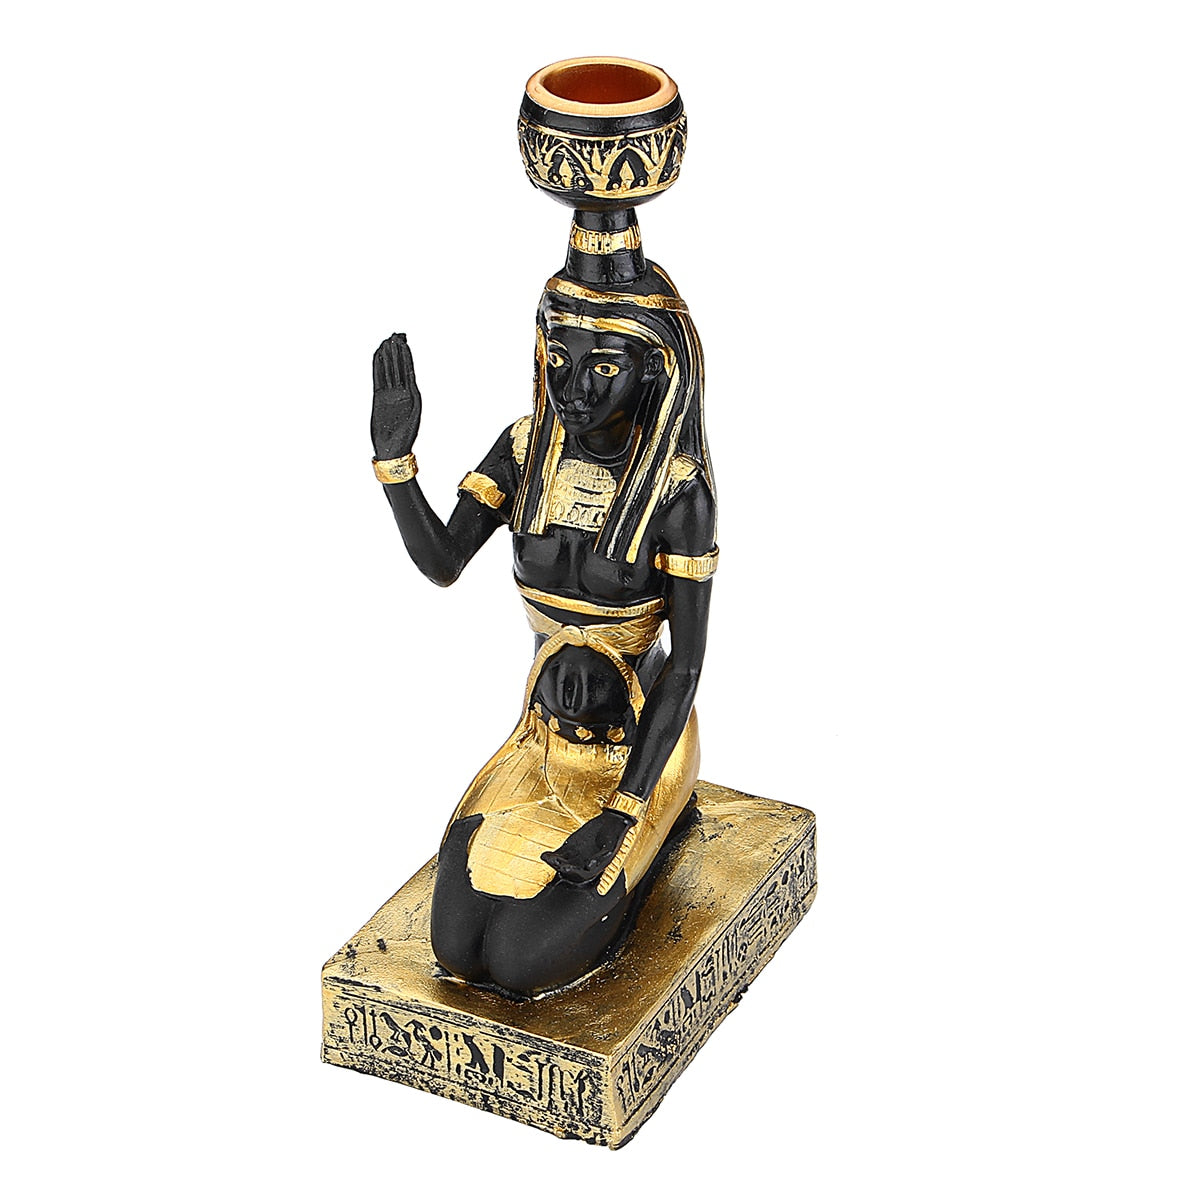 Figuras de resina candelabros retro antigua diosa egipcia esfinge sphinx anubis forma manualidad de candelabros adornos decorativos